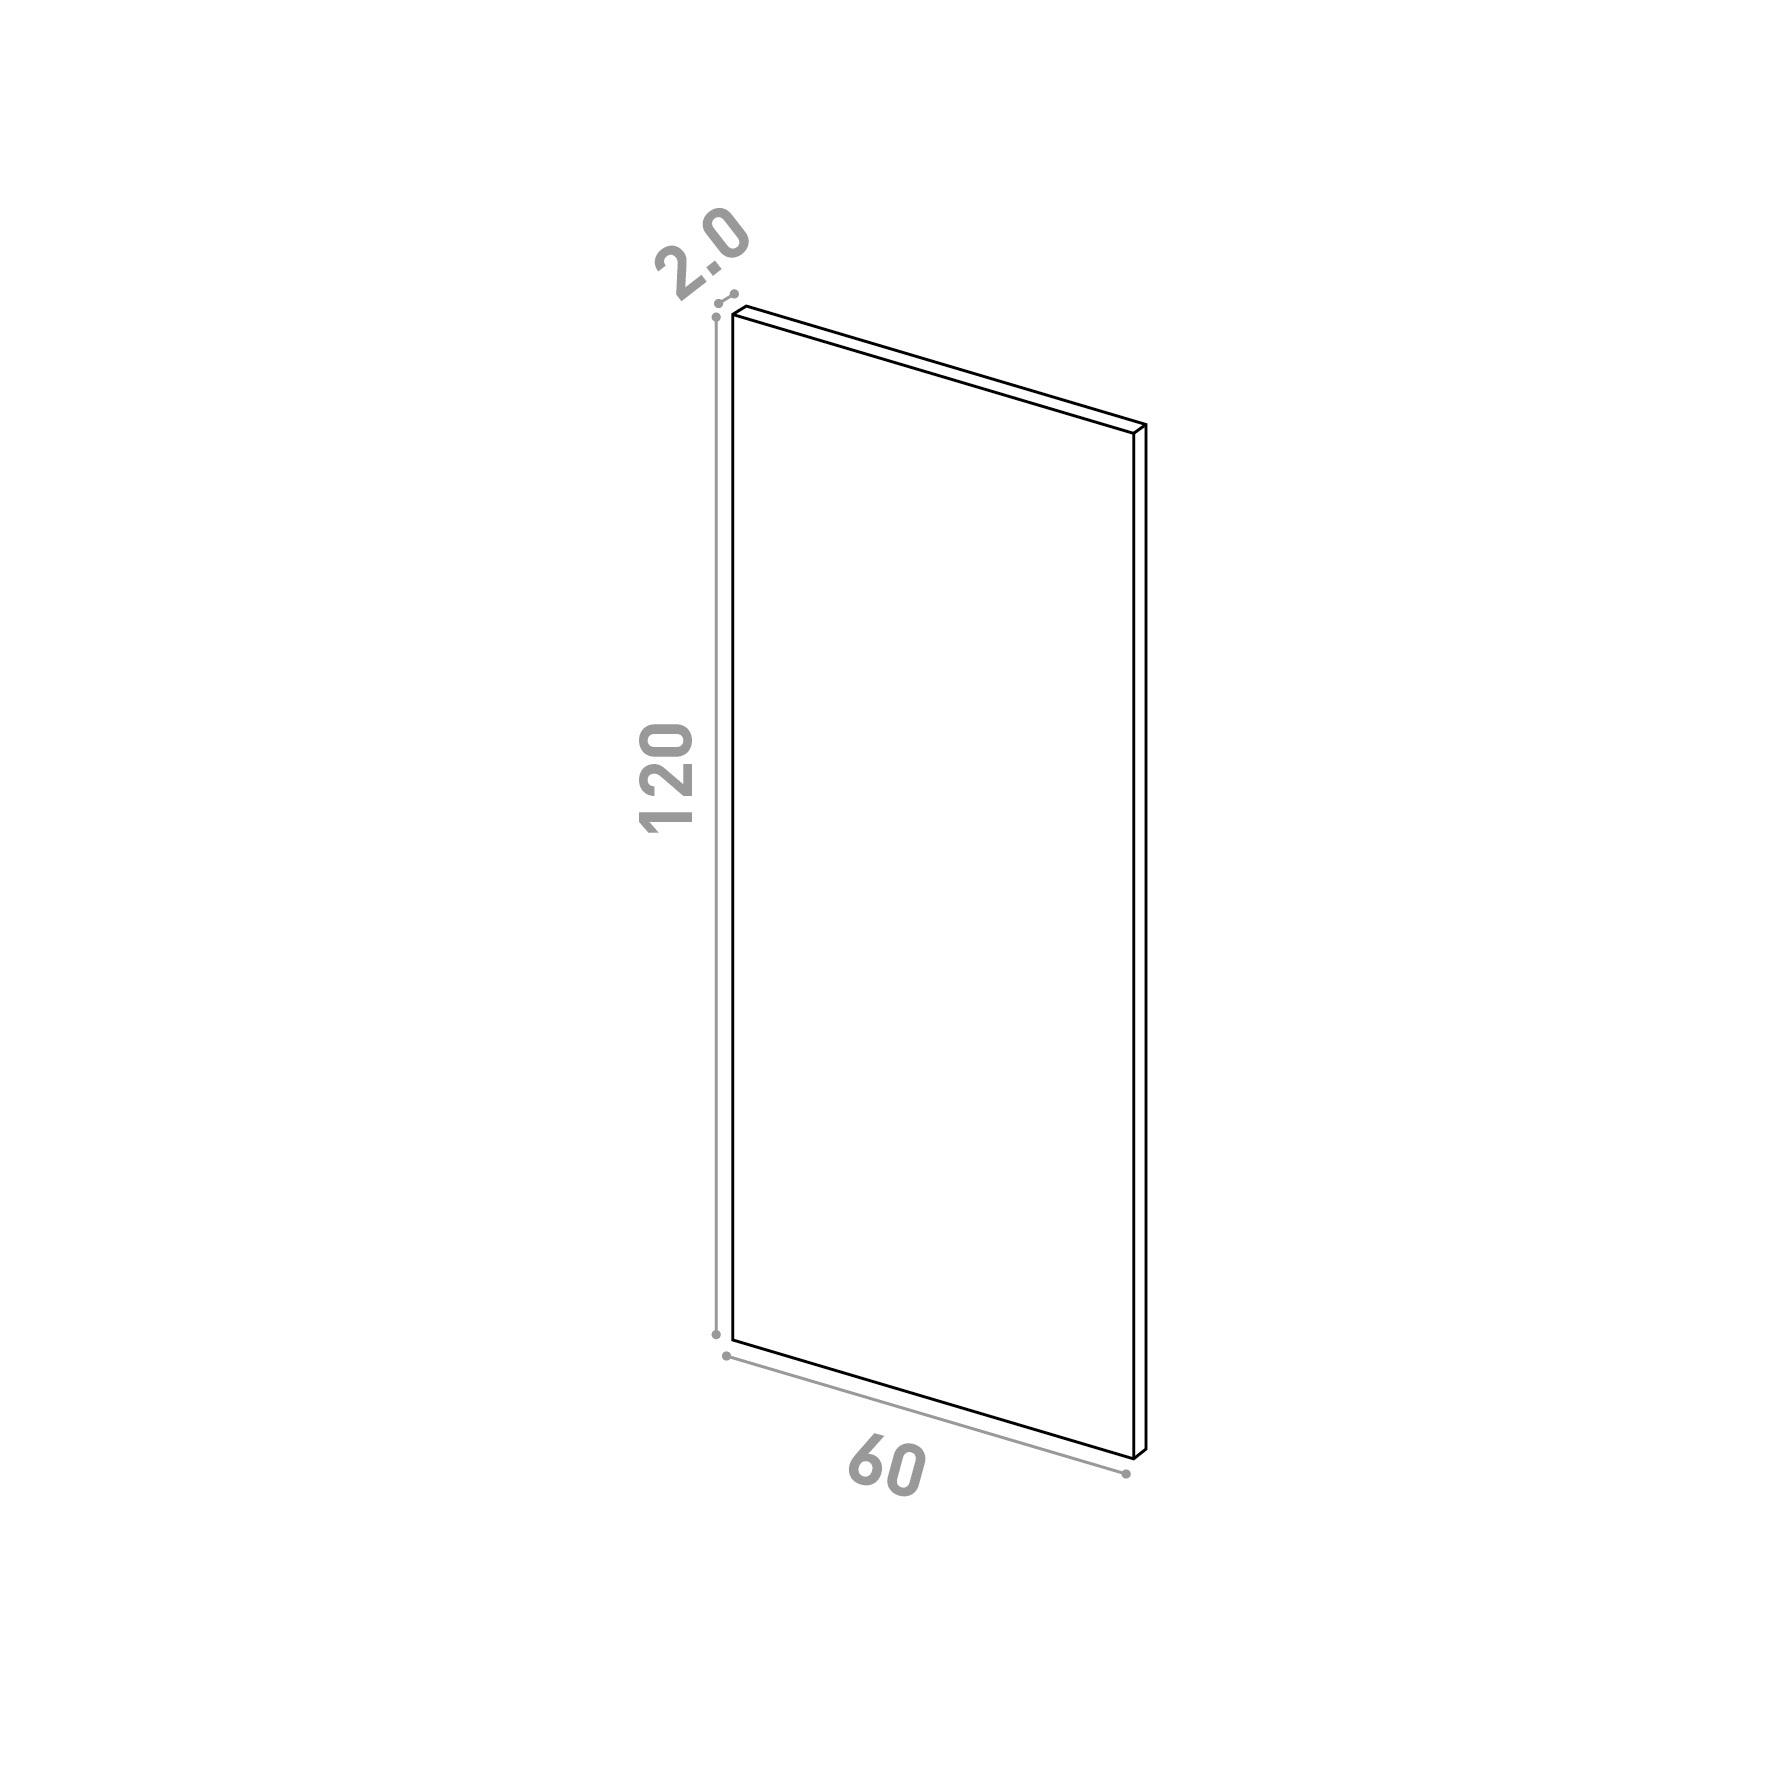 Door 60x120cm | Straight design | Matte lacquered